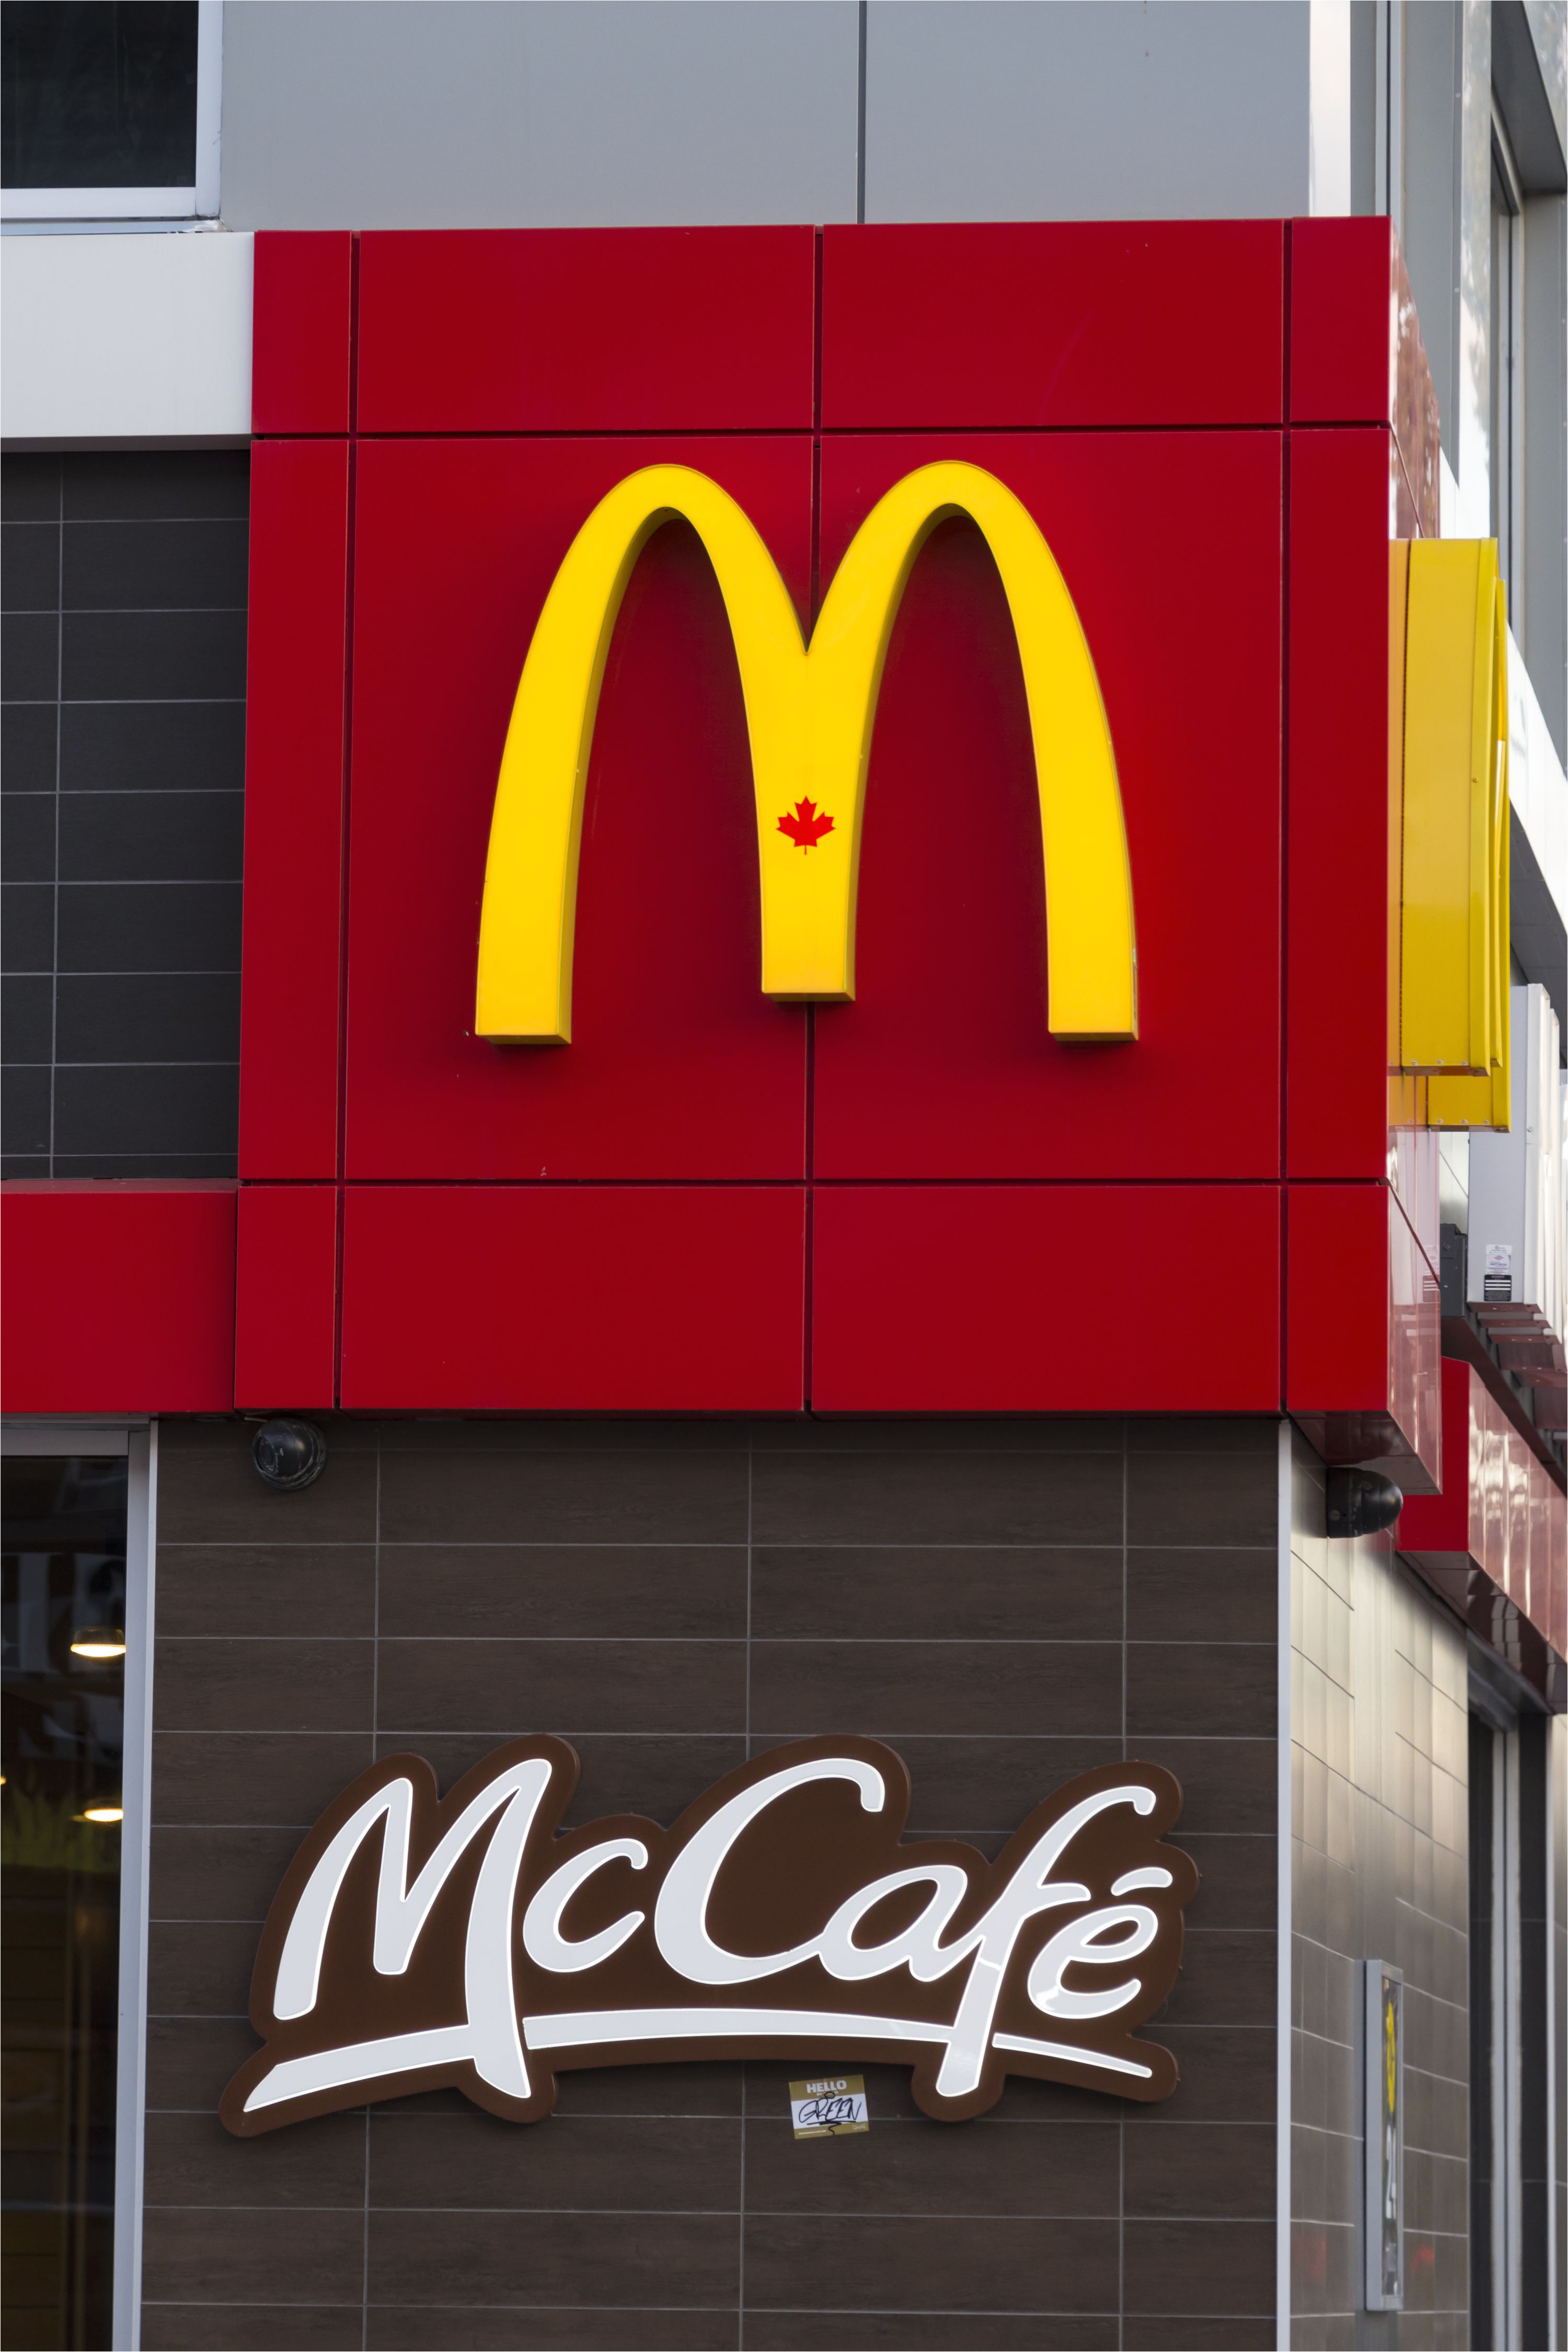 the mcdonalds logo and signage of mccafe outside the mccafe news photo 496911982 1541788948 jpg